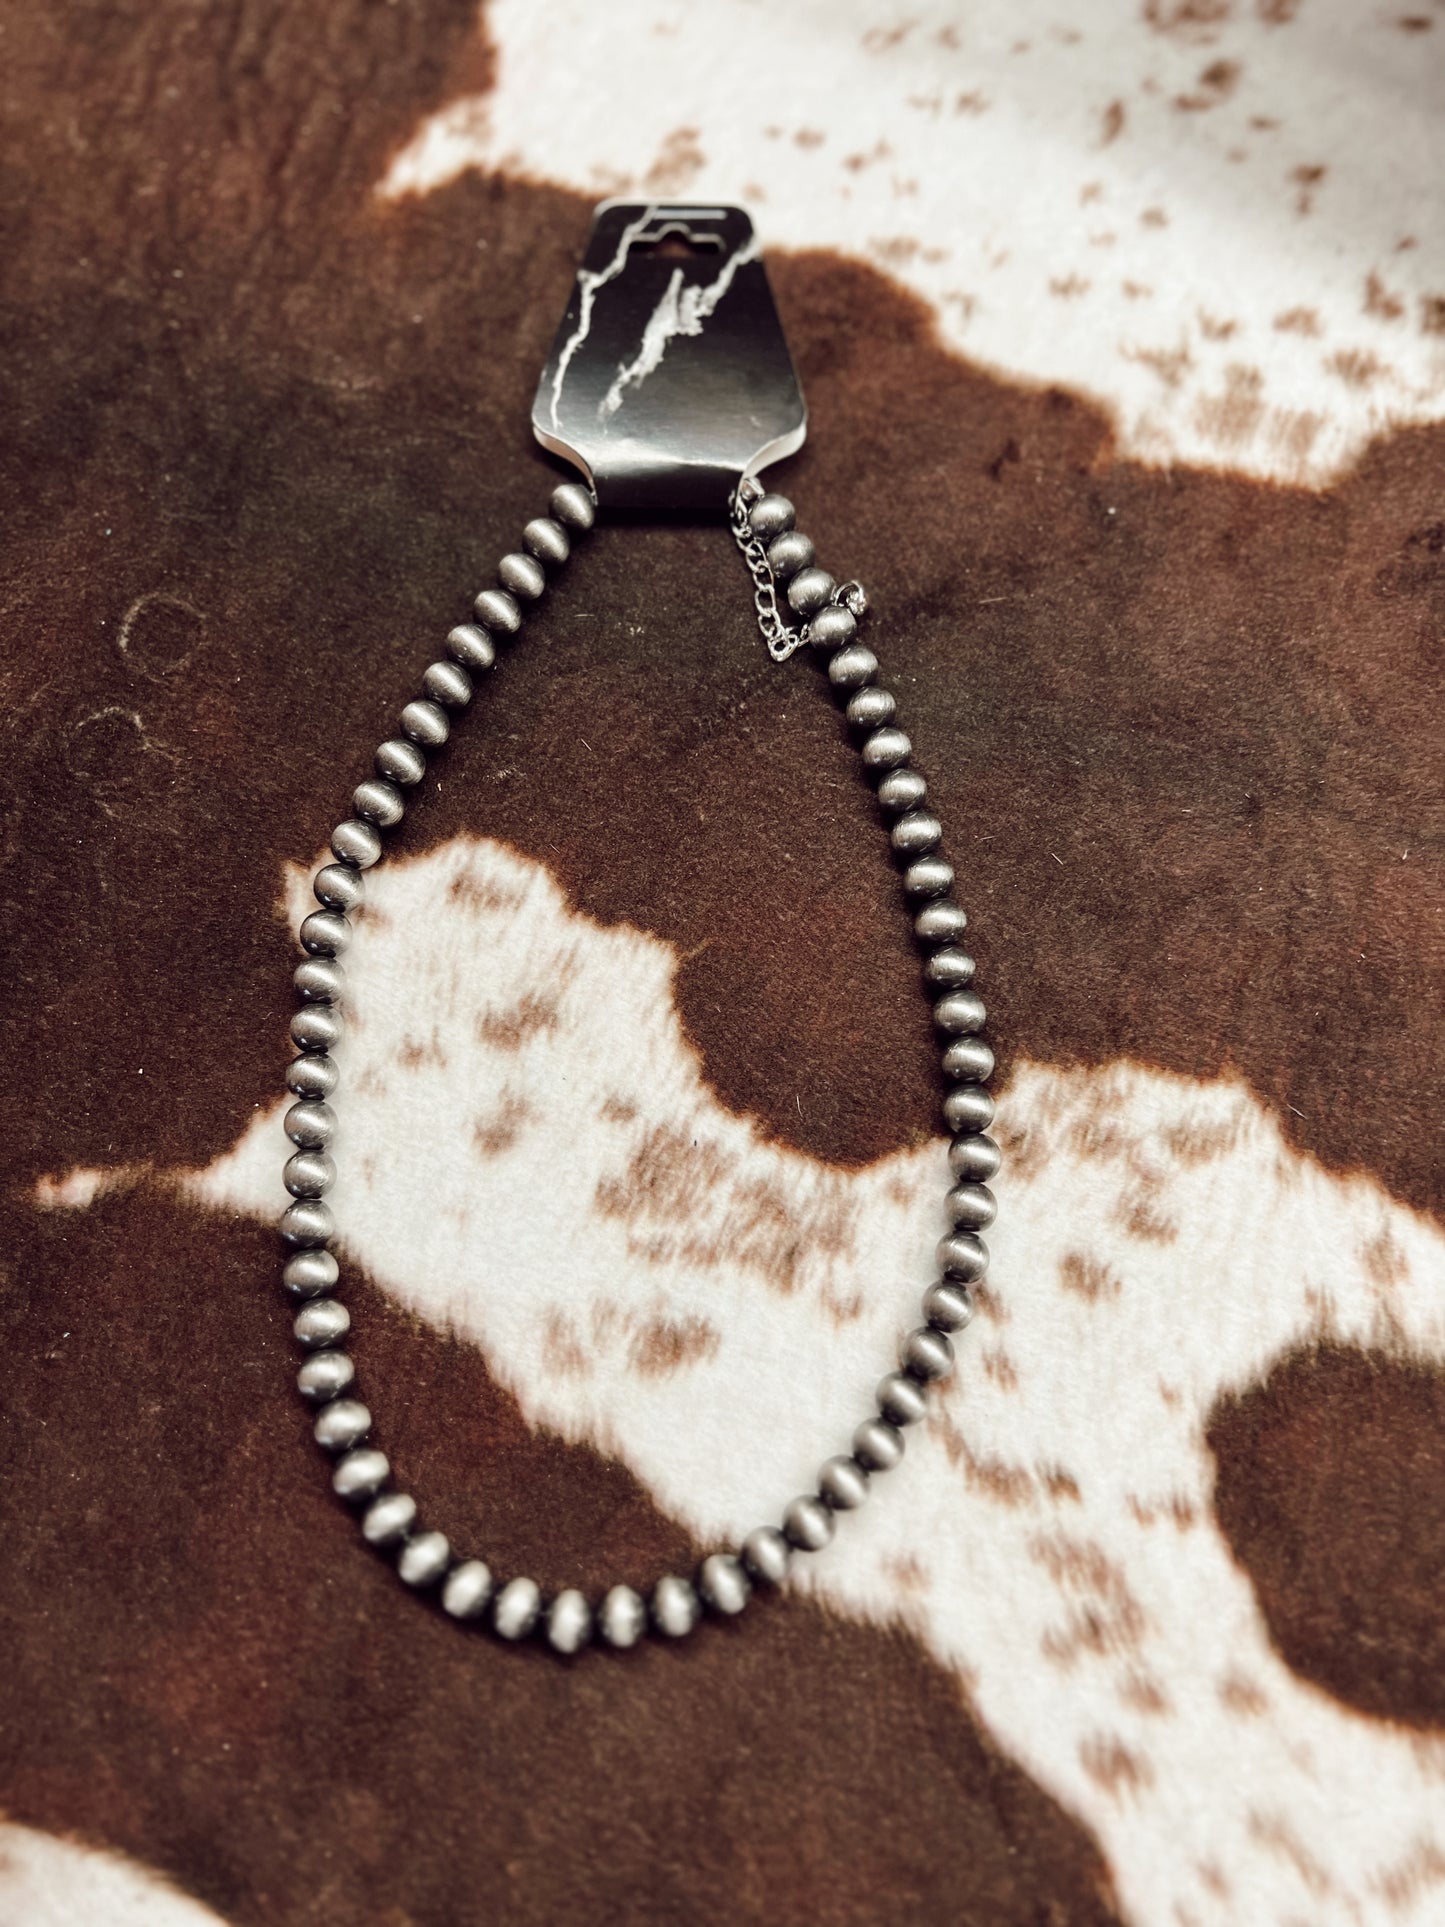 Wagoner Navajo pearl necklace